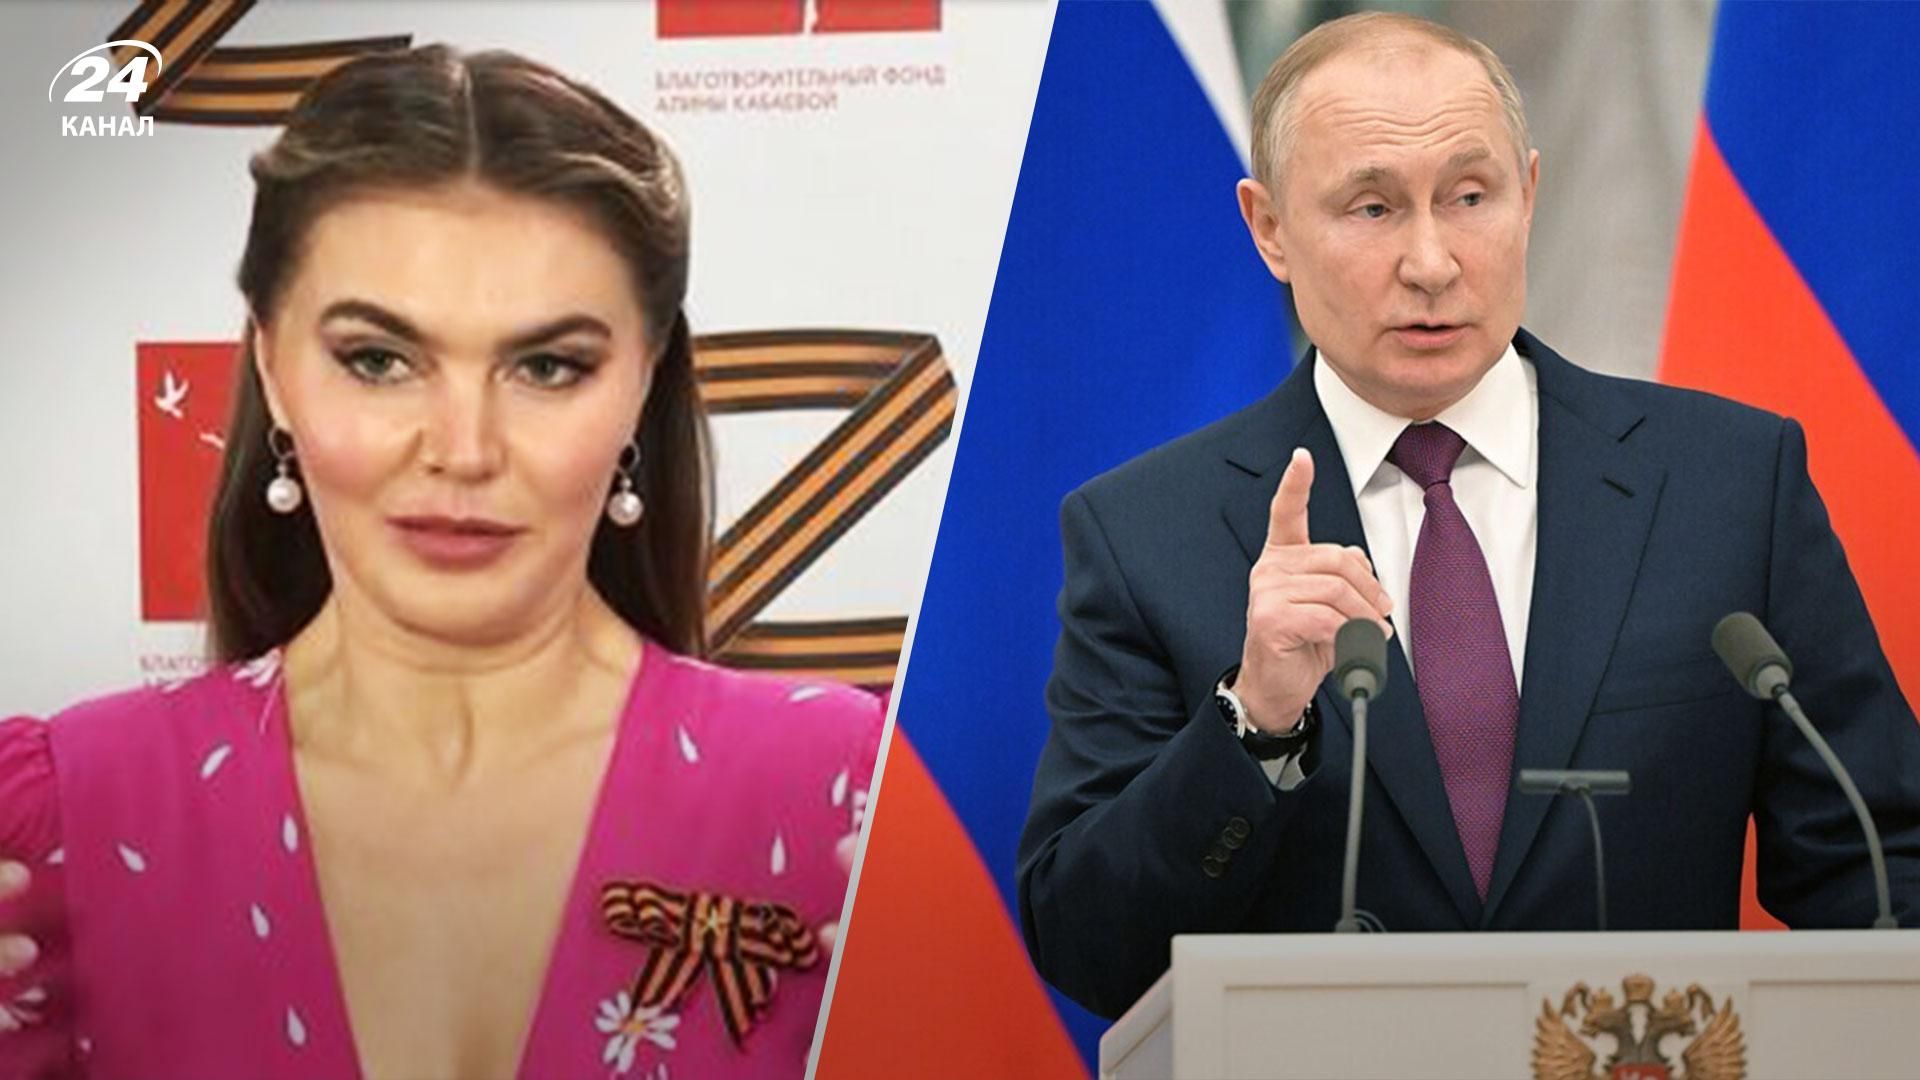 ЕС рассматривает персональные санкции против любовницы Путина Кабаевой, – СМИ